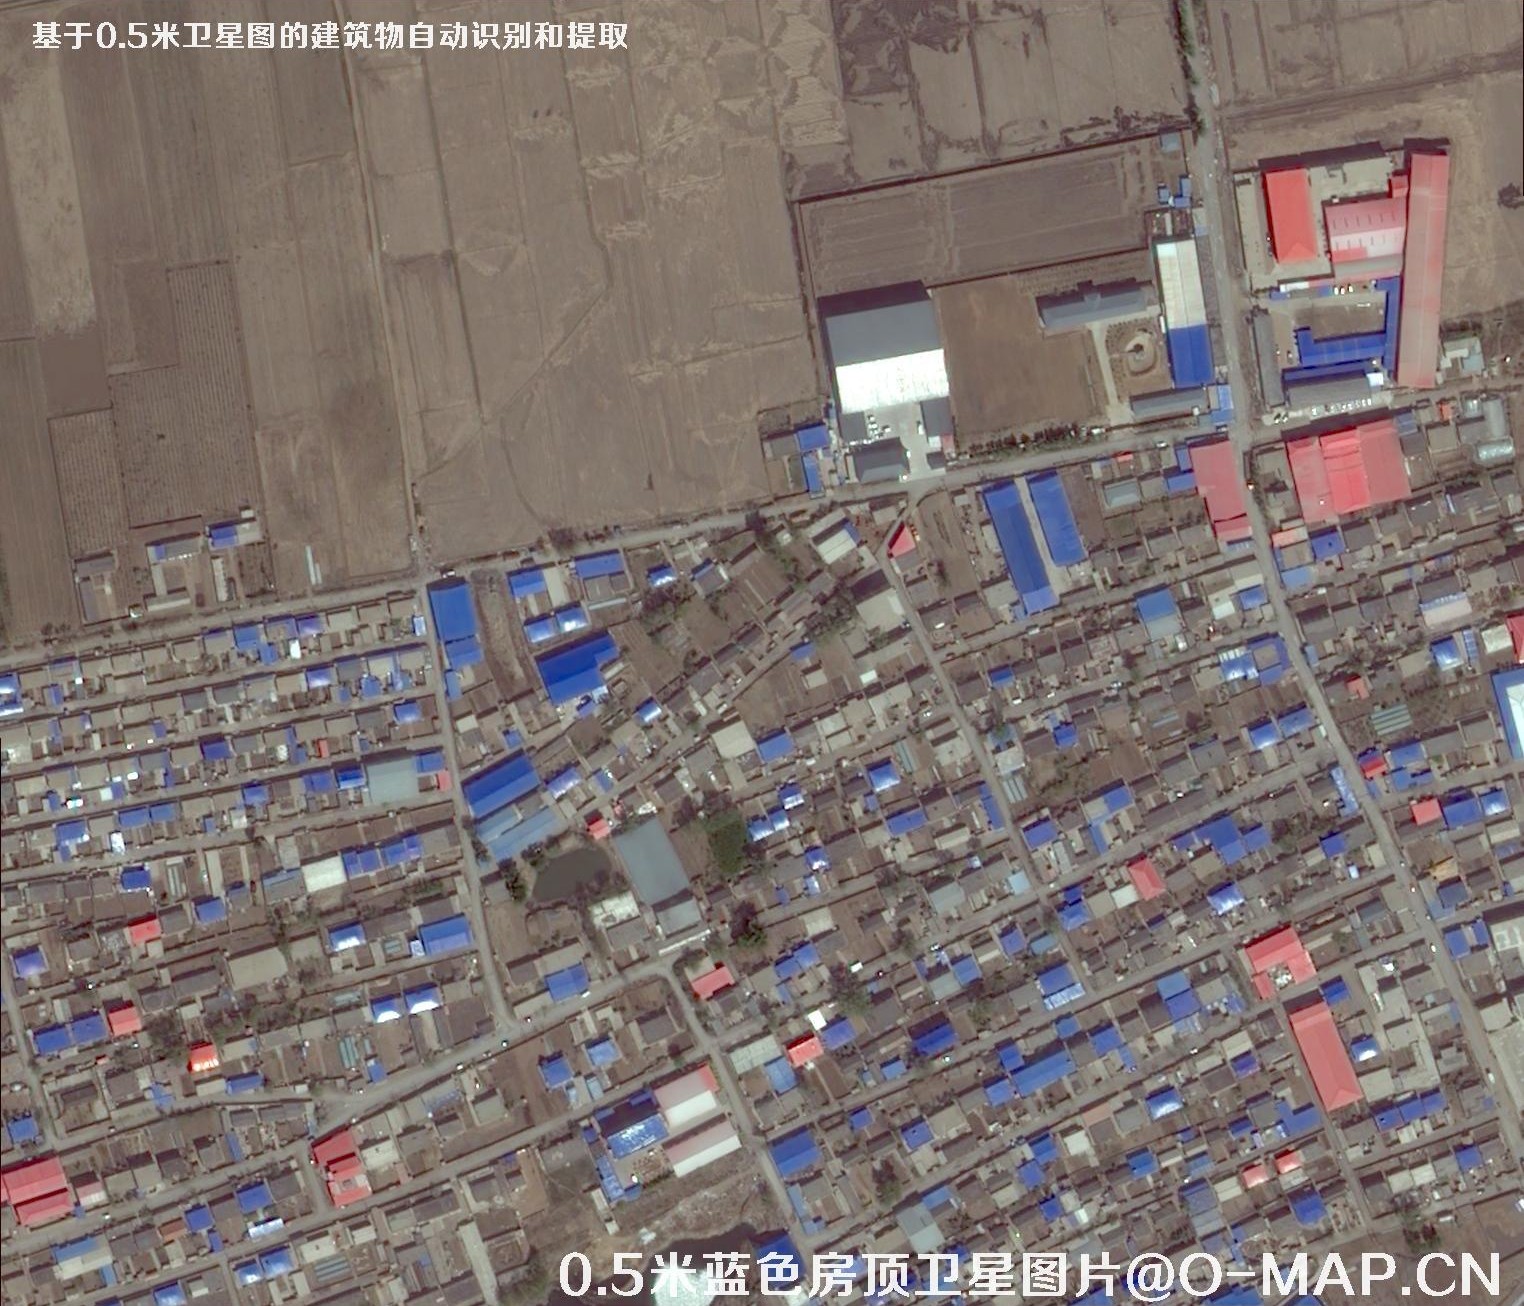 基于0.5米分辨率卫星影像的蓝色屋顶建筑物自动识别和提取